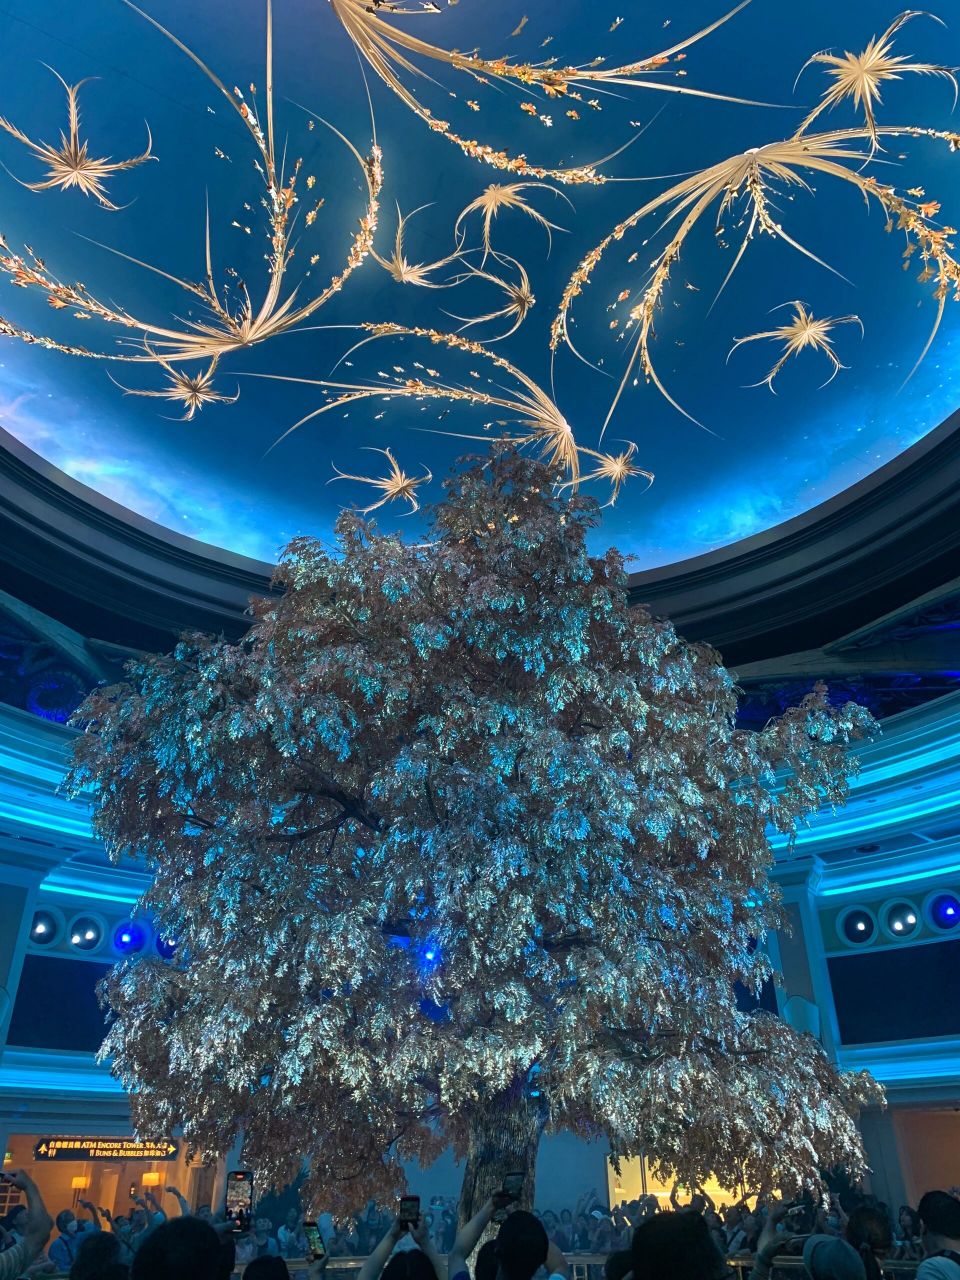 澳门永利发财树——财富与繁荣的象征 澳门永利发财树,是澳门永利酒店